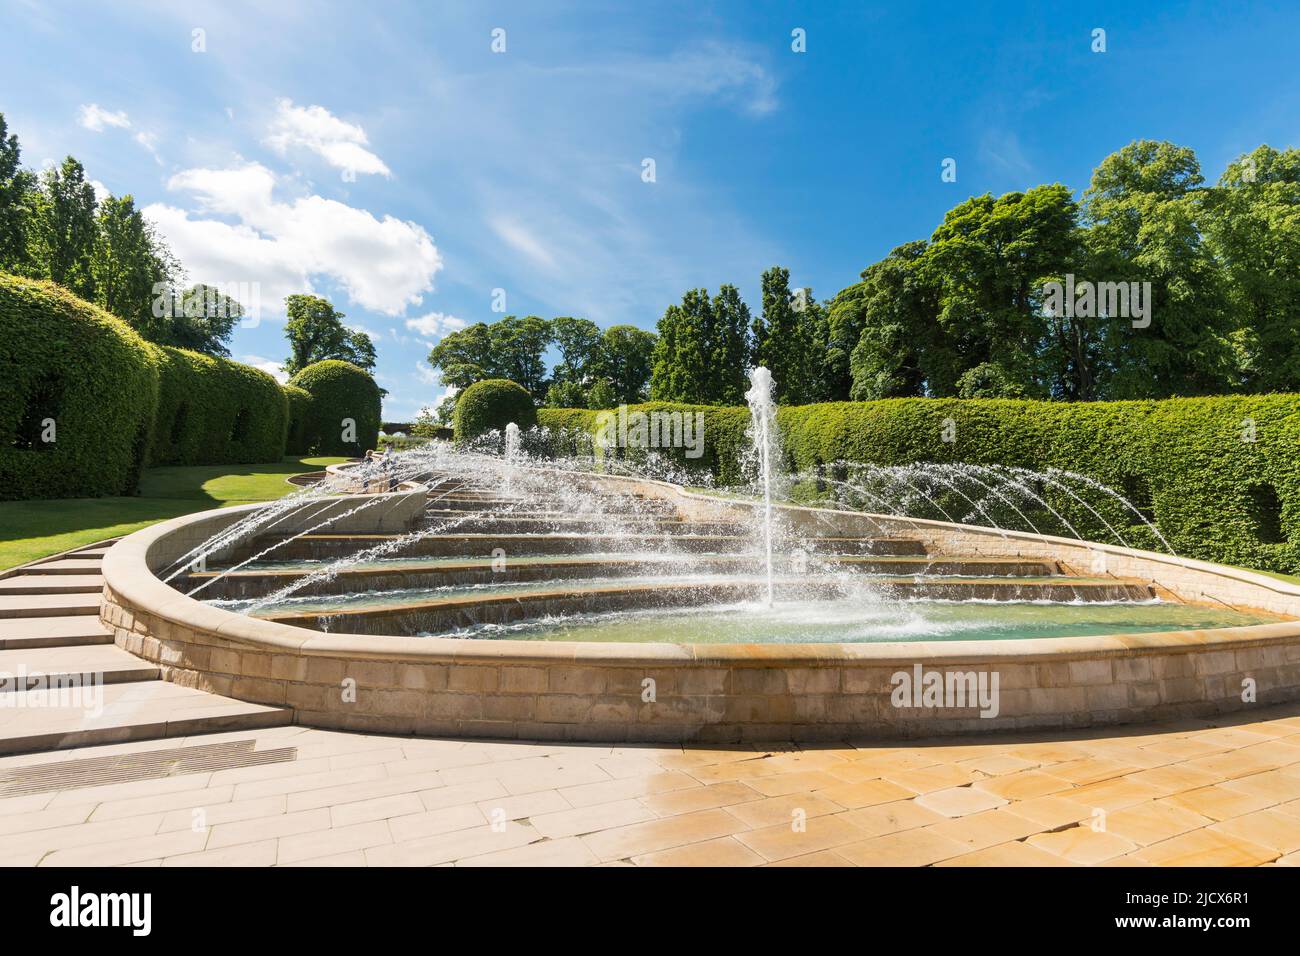 Die große Kaskade oder das Wasserspiel mit Springbrunnen in Alnwick Gardens, Northumberland, England, Großbritannien Stockfoto